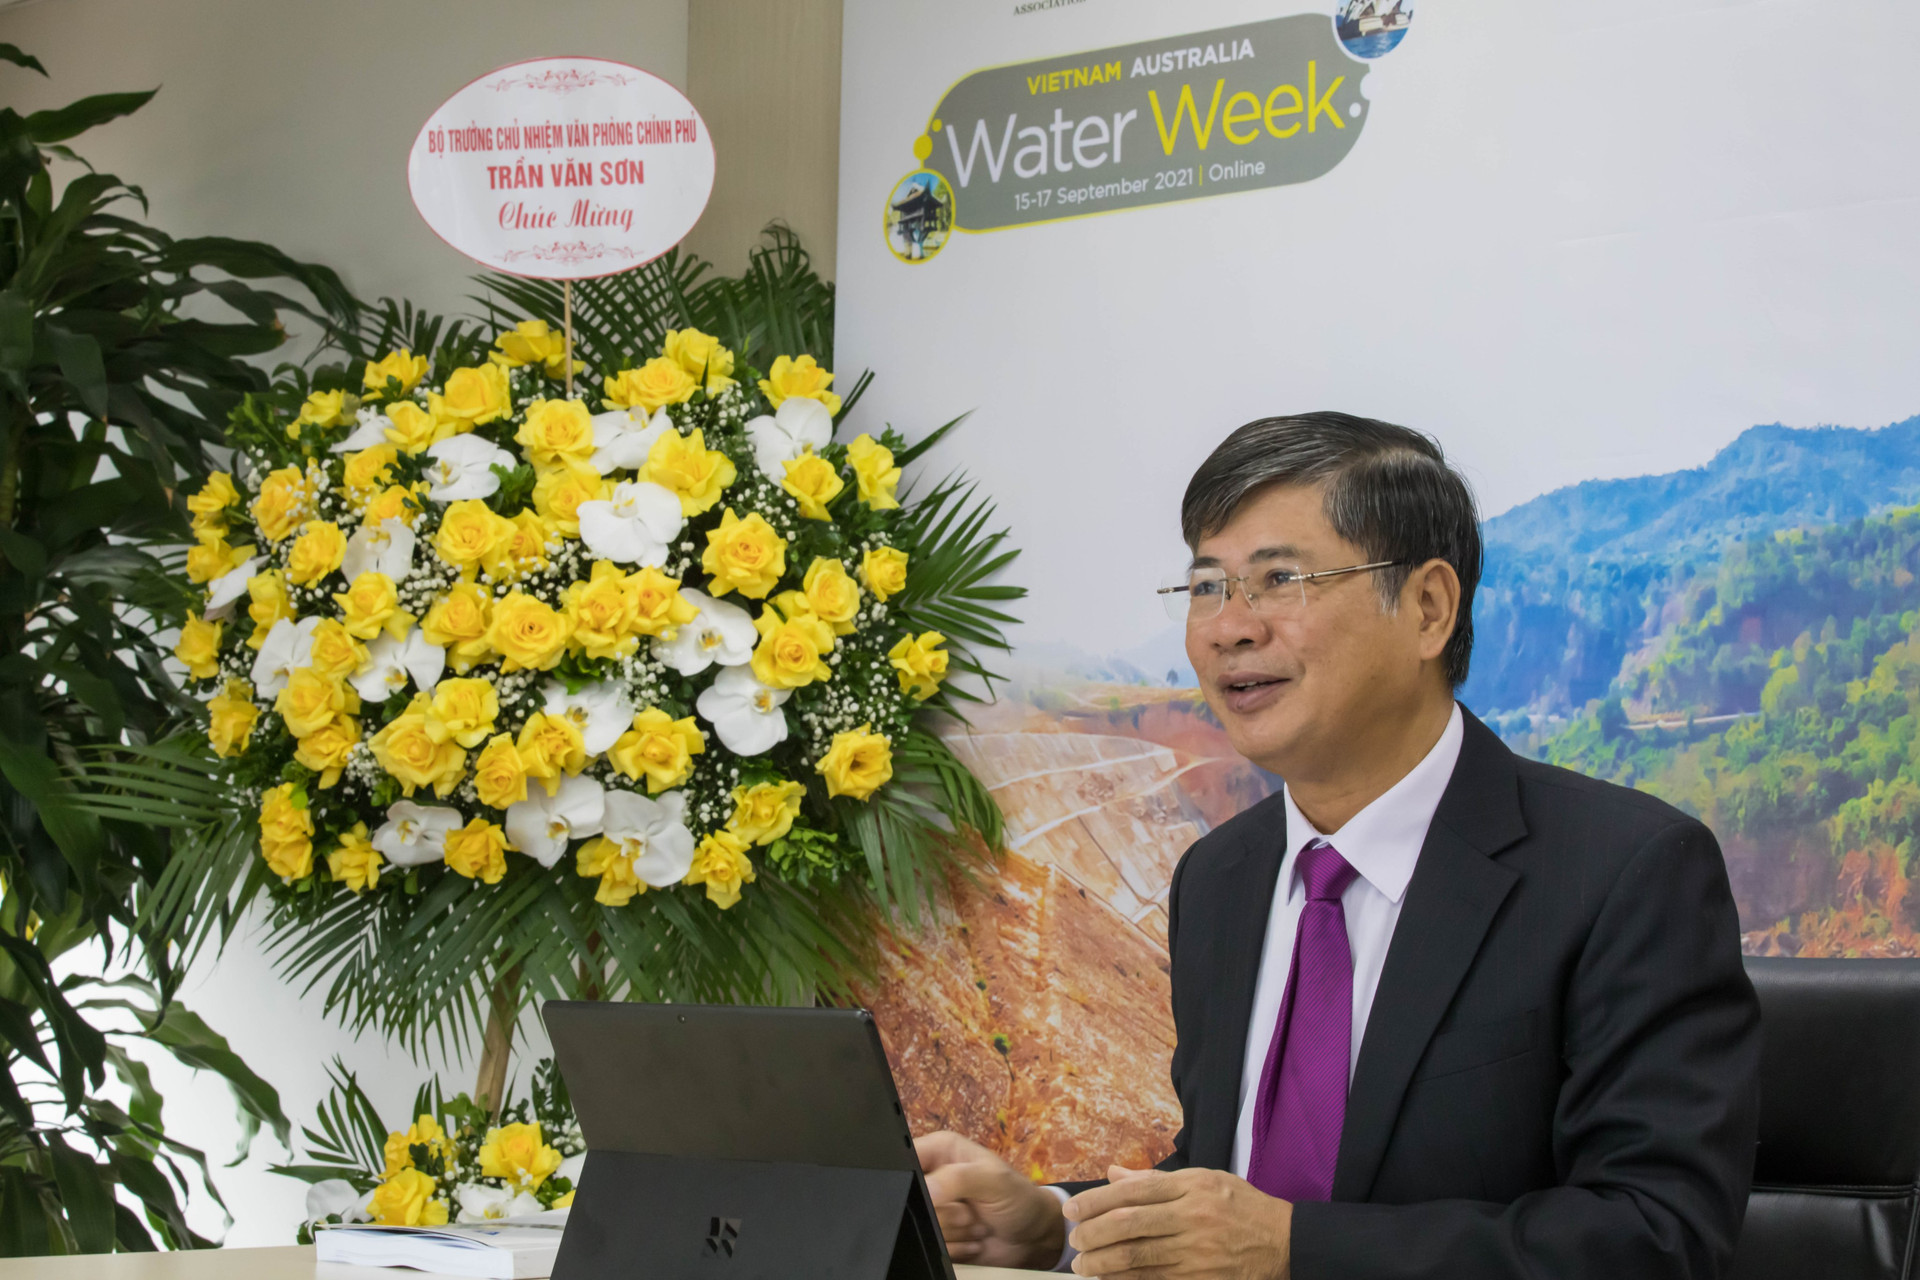 Ông Nguyễn Ngọc Điệp, Chủ tịch Hội Cấp thoát nước Việt Nam phát biểu tại phiên khai mạc Tuần lễ ngành nước Việt Nam -Úc 2021